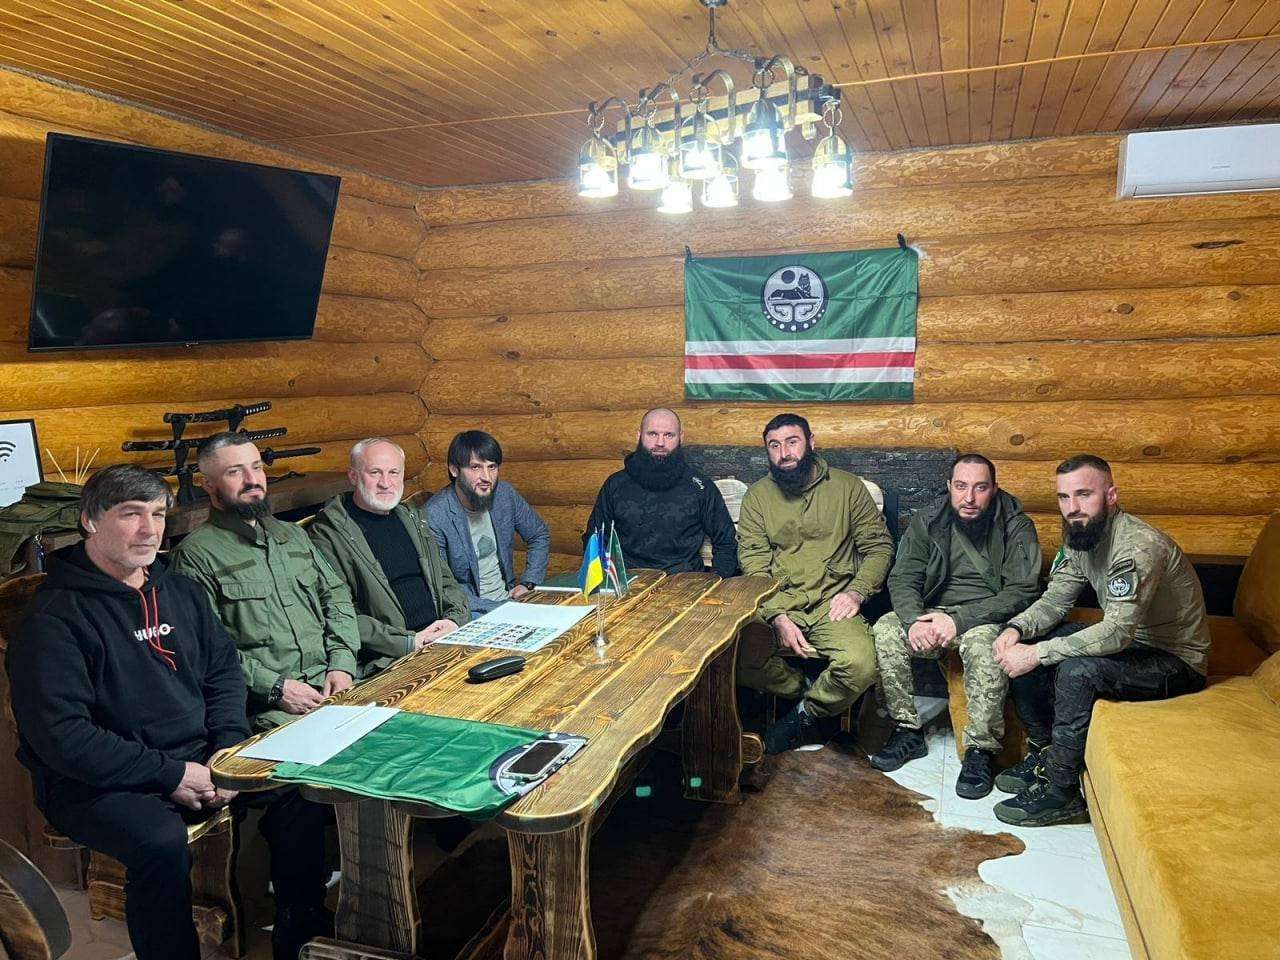 L'incontro tra Abdul Hakim al-Shishani, leader di Ajnad al-Kavkaz, e Akhmed Zakayev in Ucraina sottolinea il rischio geopolitico derivante dalla presenza di foreign fightersi in Ucraina (Credits: Twitter Account)